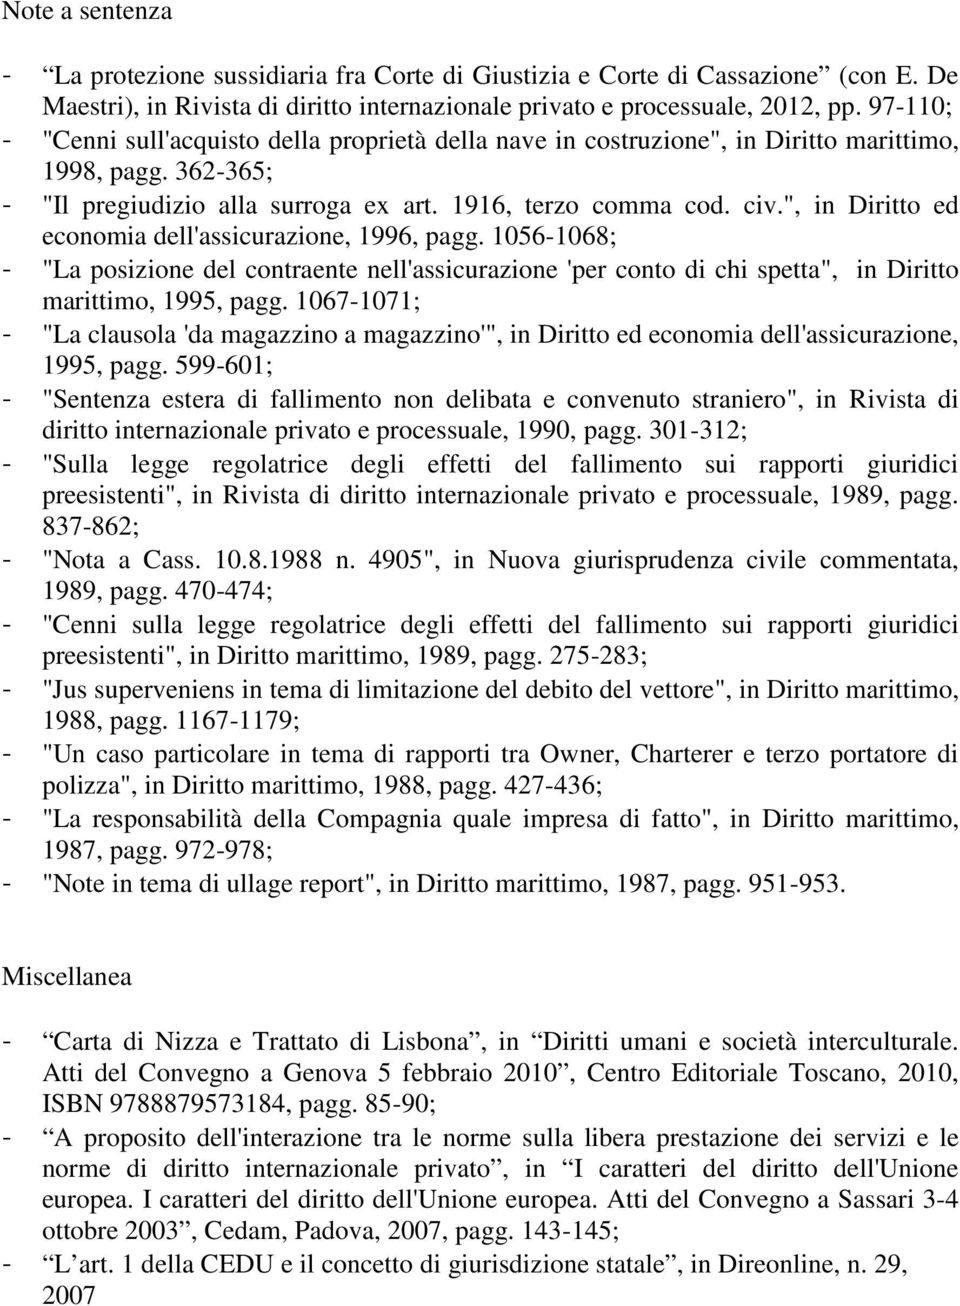 ", in Diritto ed economia dell'assicurazione, 1996, pagg. 1056-1068; - "La posizione del contraente nell'assicurazione 'per conto di chi spetta", in Diritto marittimo, 1995, pagg.